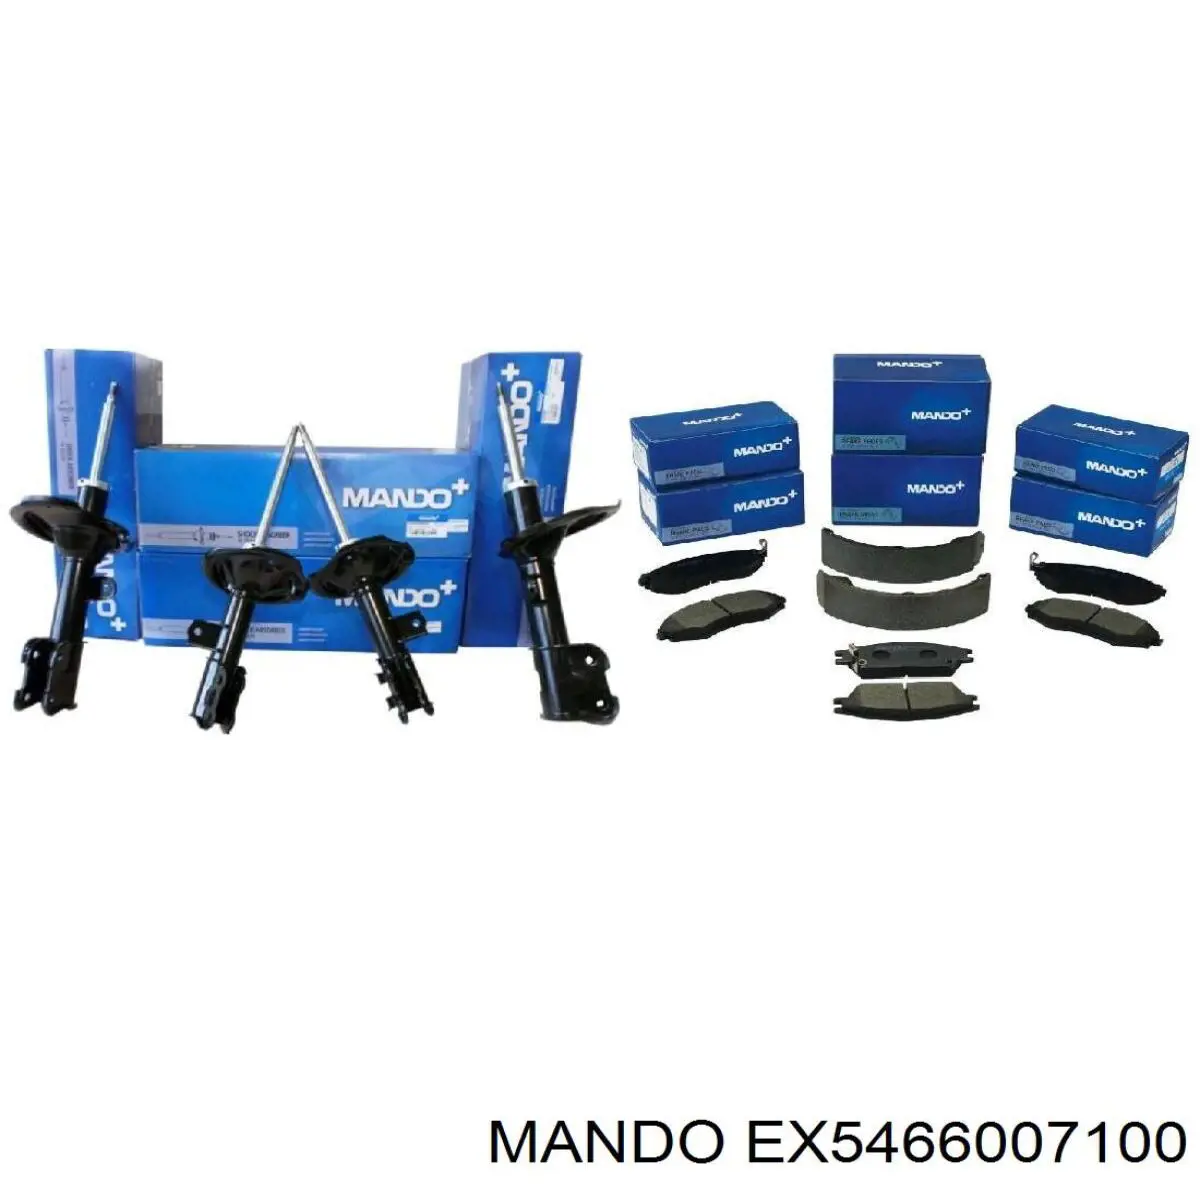 EX5466007100 Mando амортизатор передний правый